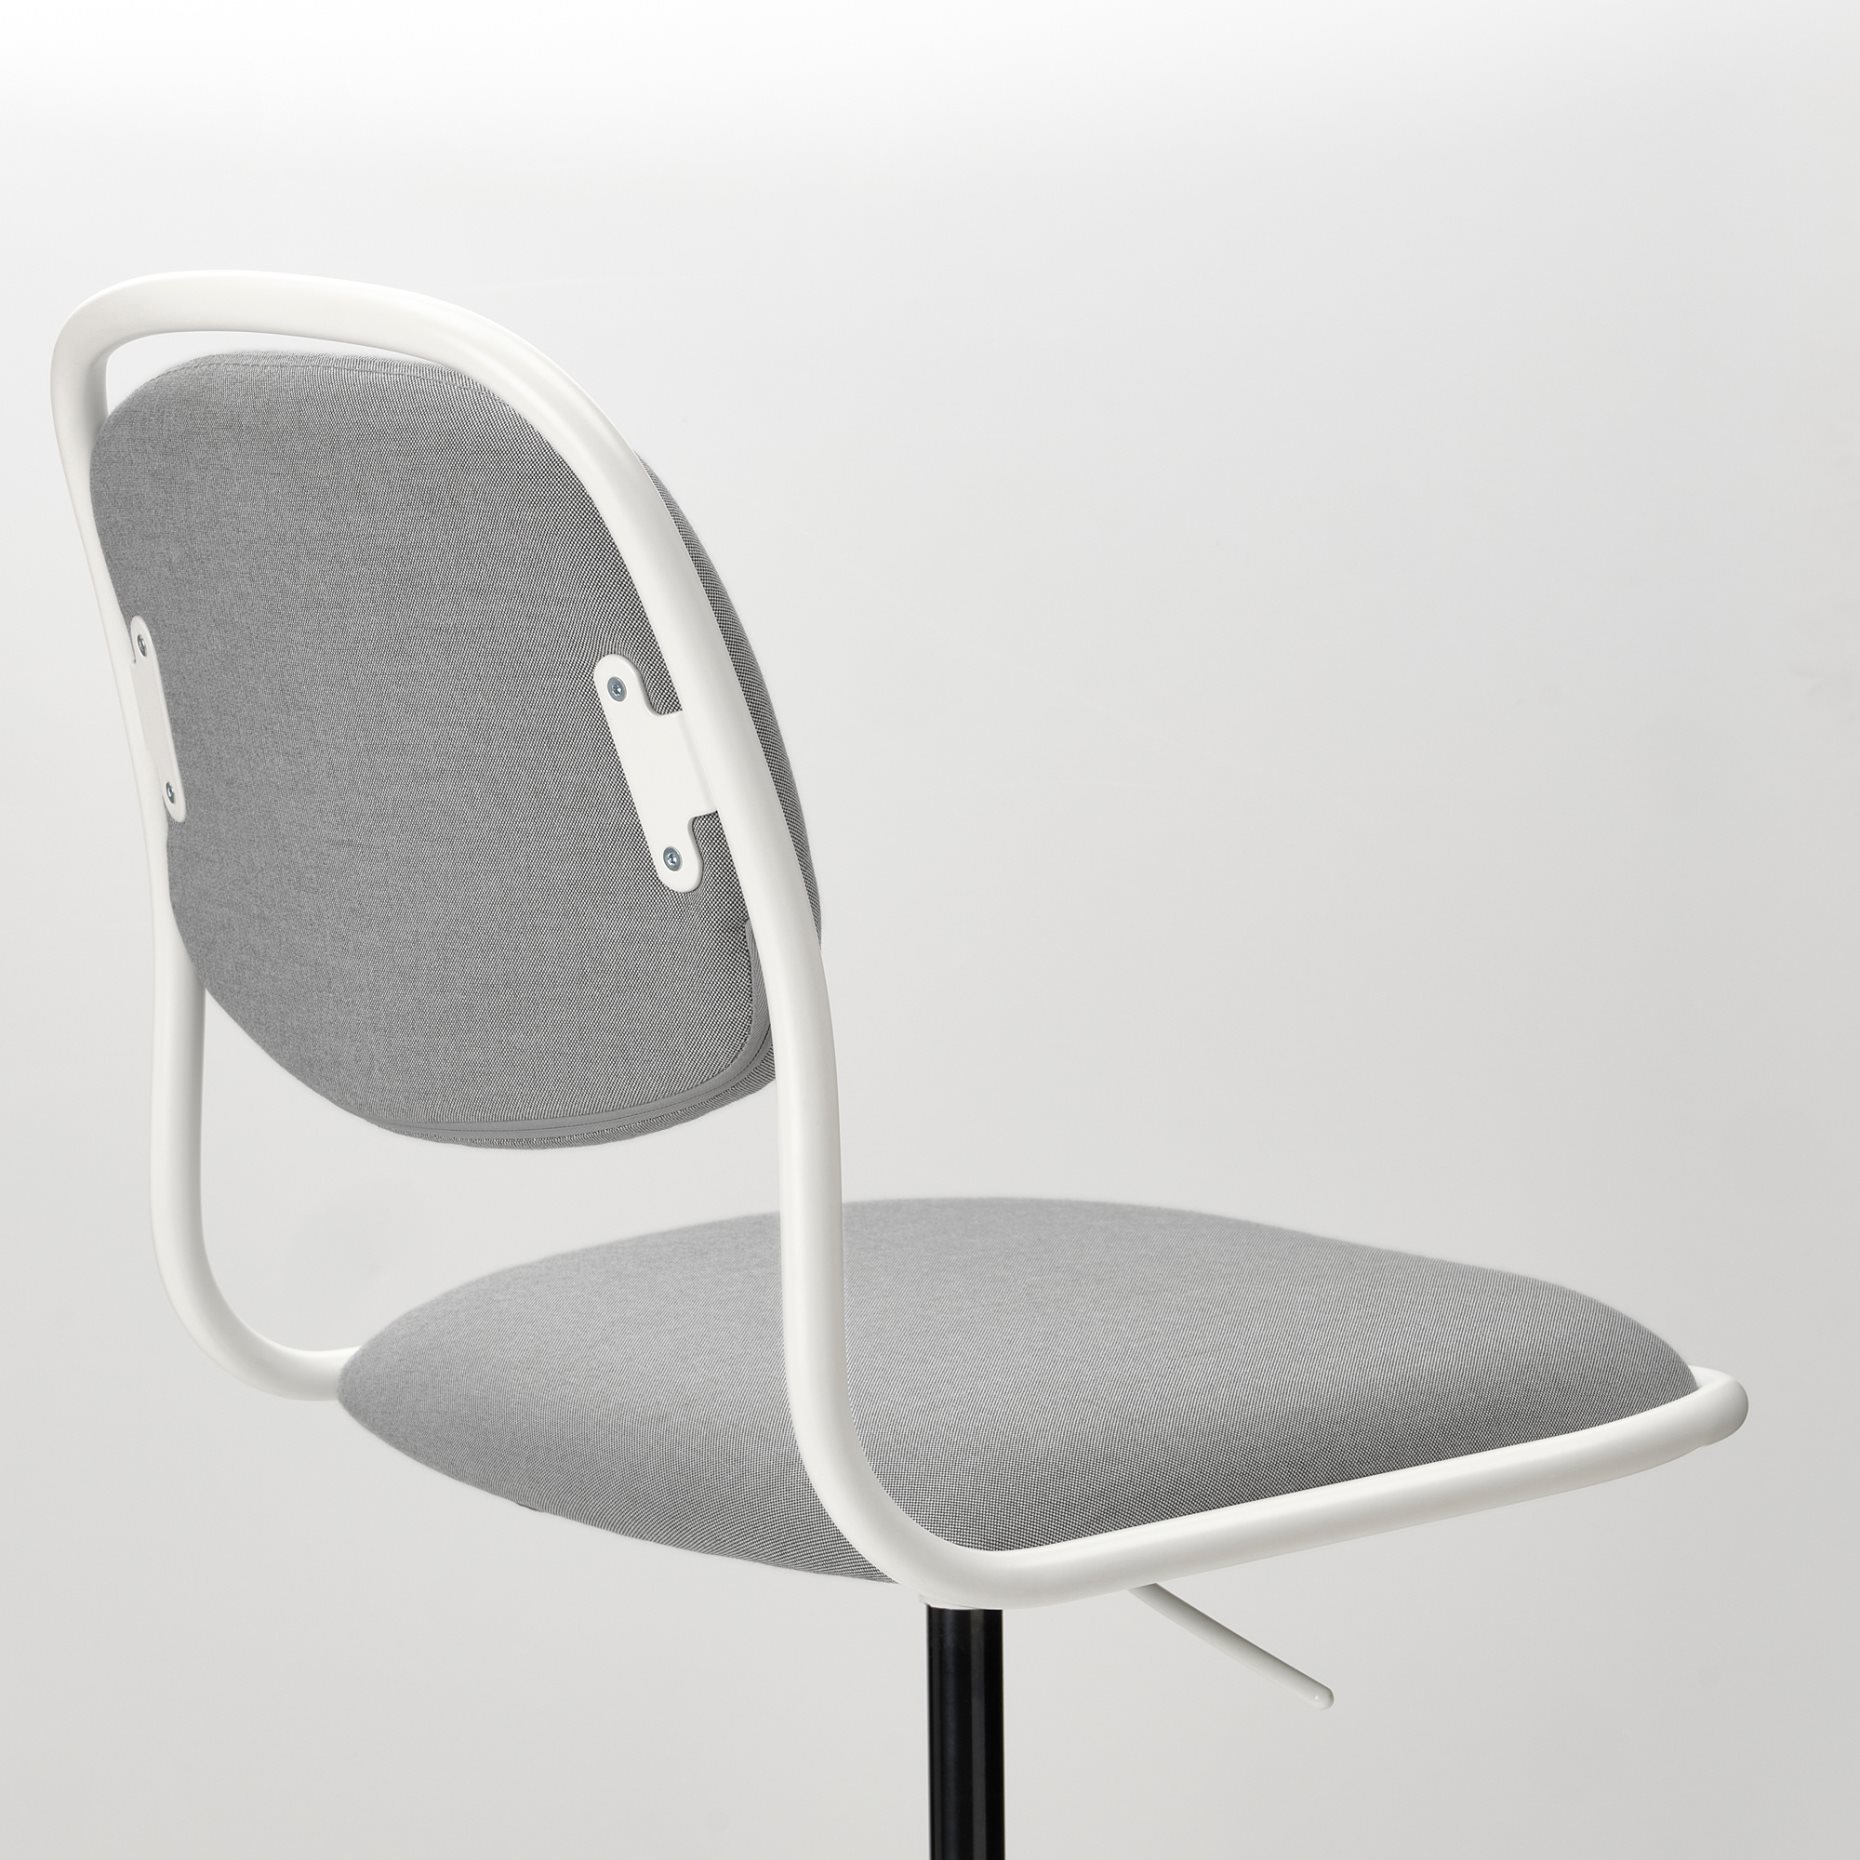 ÖRFJÄLL, swivel chair, 494.160.12